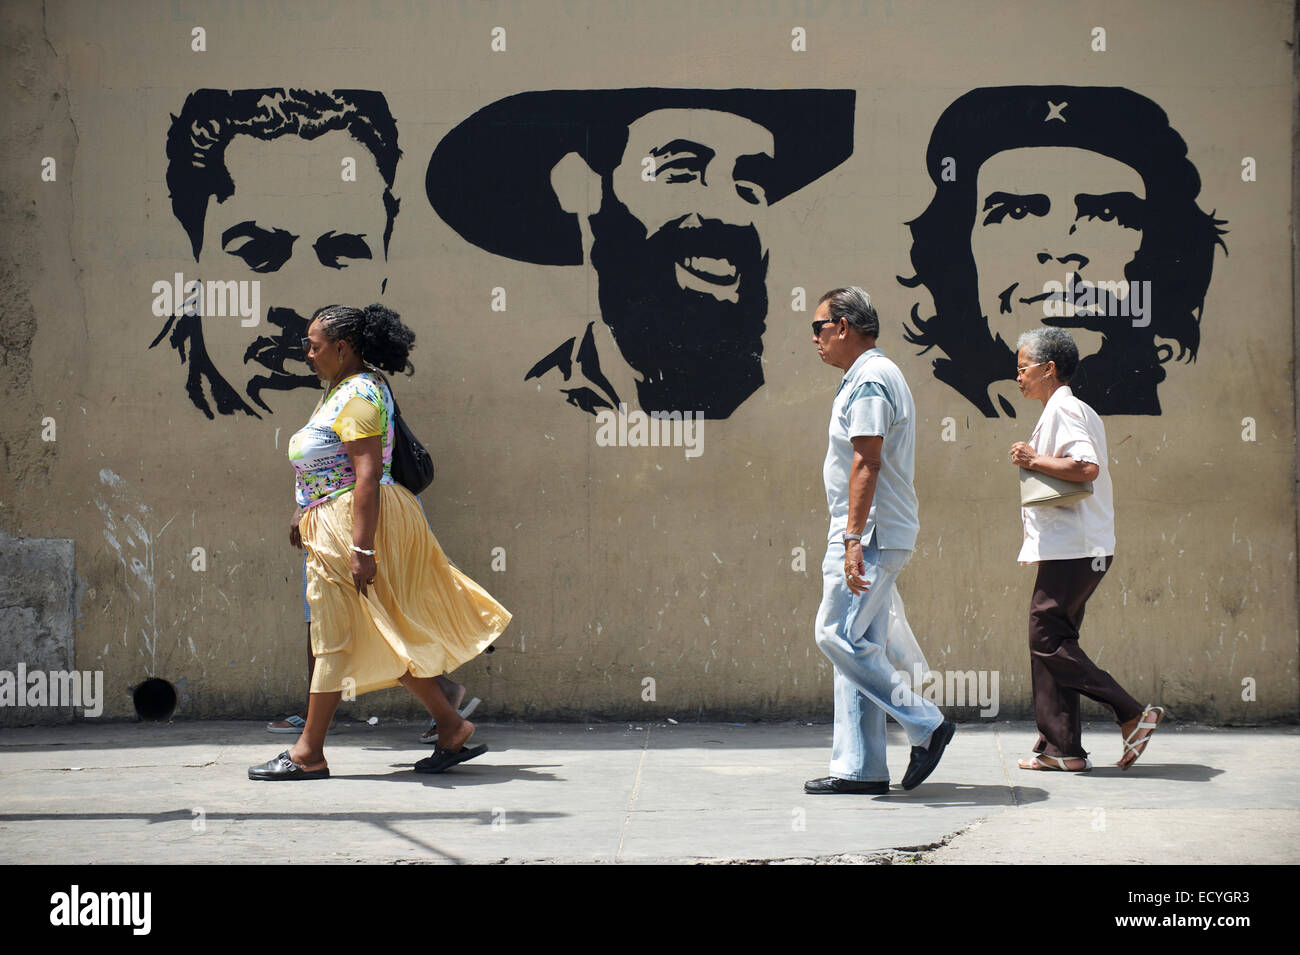 L'Avana, Cuba - 16 Maggio 2011: il popolo cubano a piedi nella parte anteriore del cartellone con i rivoluzionari Mella, Cienfuegos e Guevara. Foto Stock